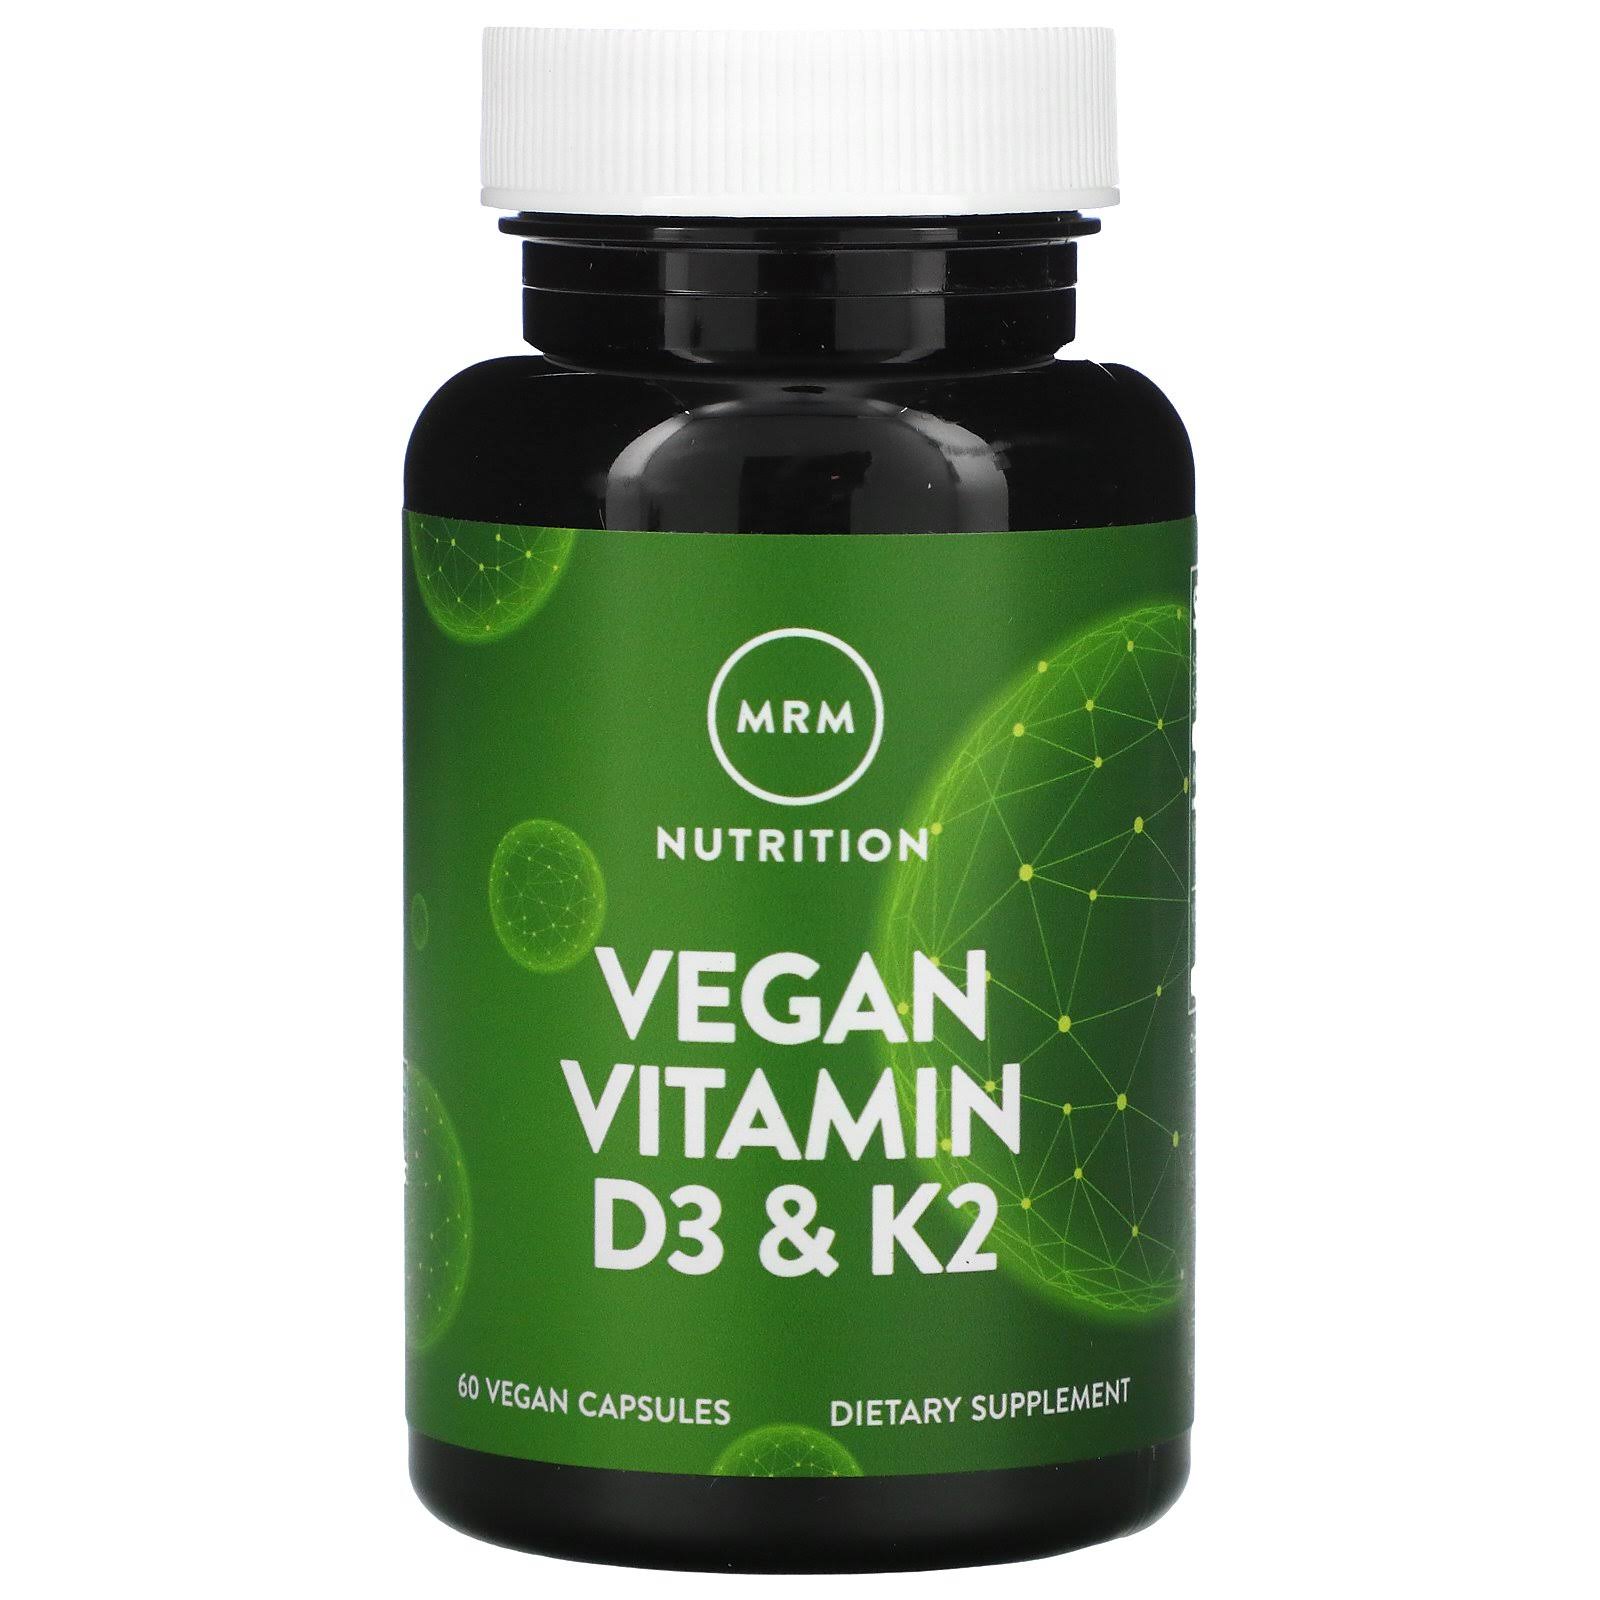 MRM Vegan Vitamin D3 and K2 Dietary Supplement - 60ct